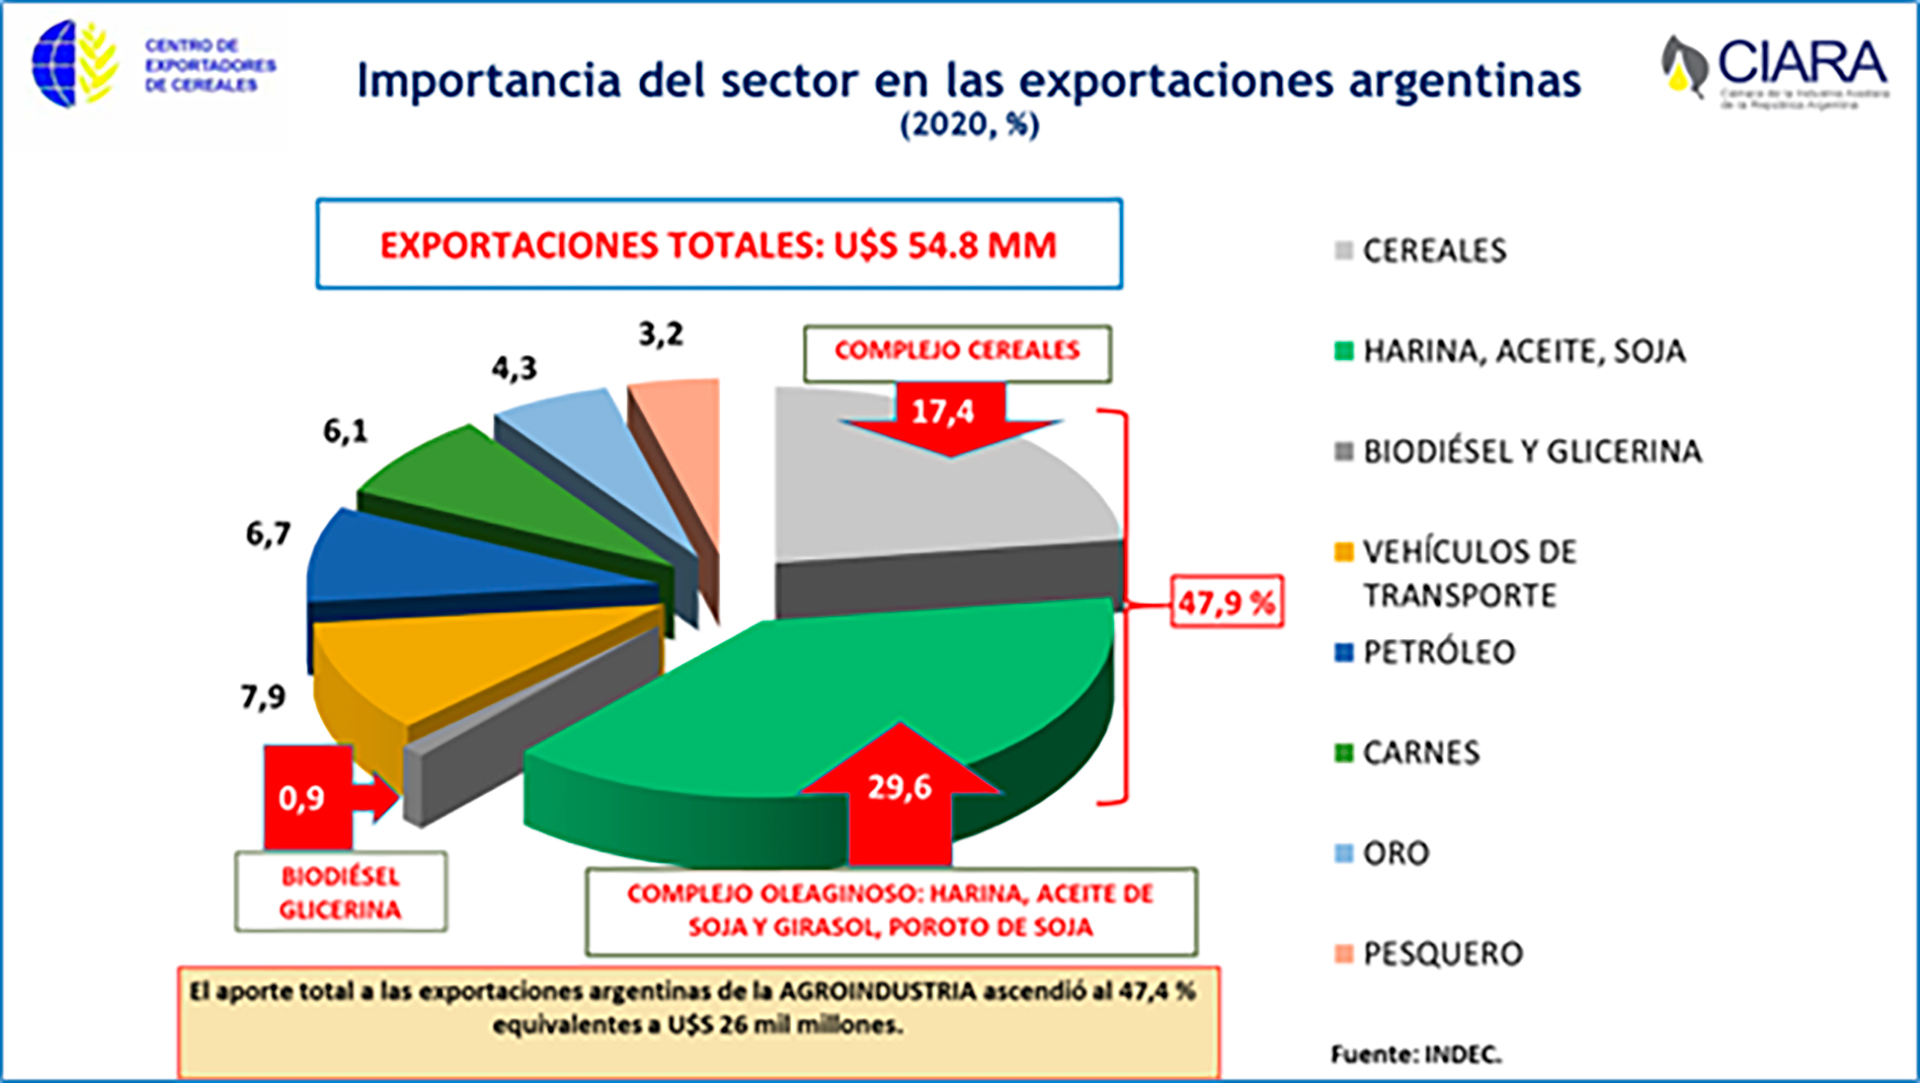 El gráfico permite apreciar los tres componentes del sector agroexportador, que genera de modo directo 48% de las exportaciones argentinas
